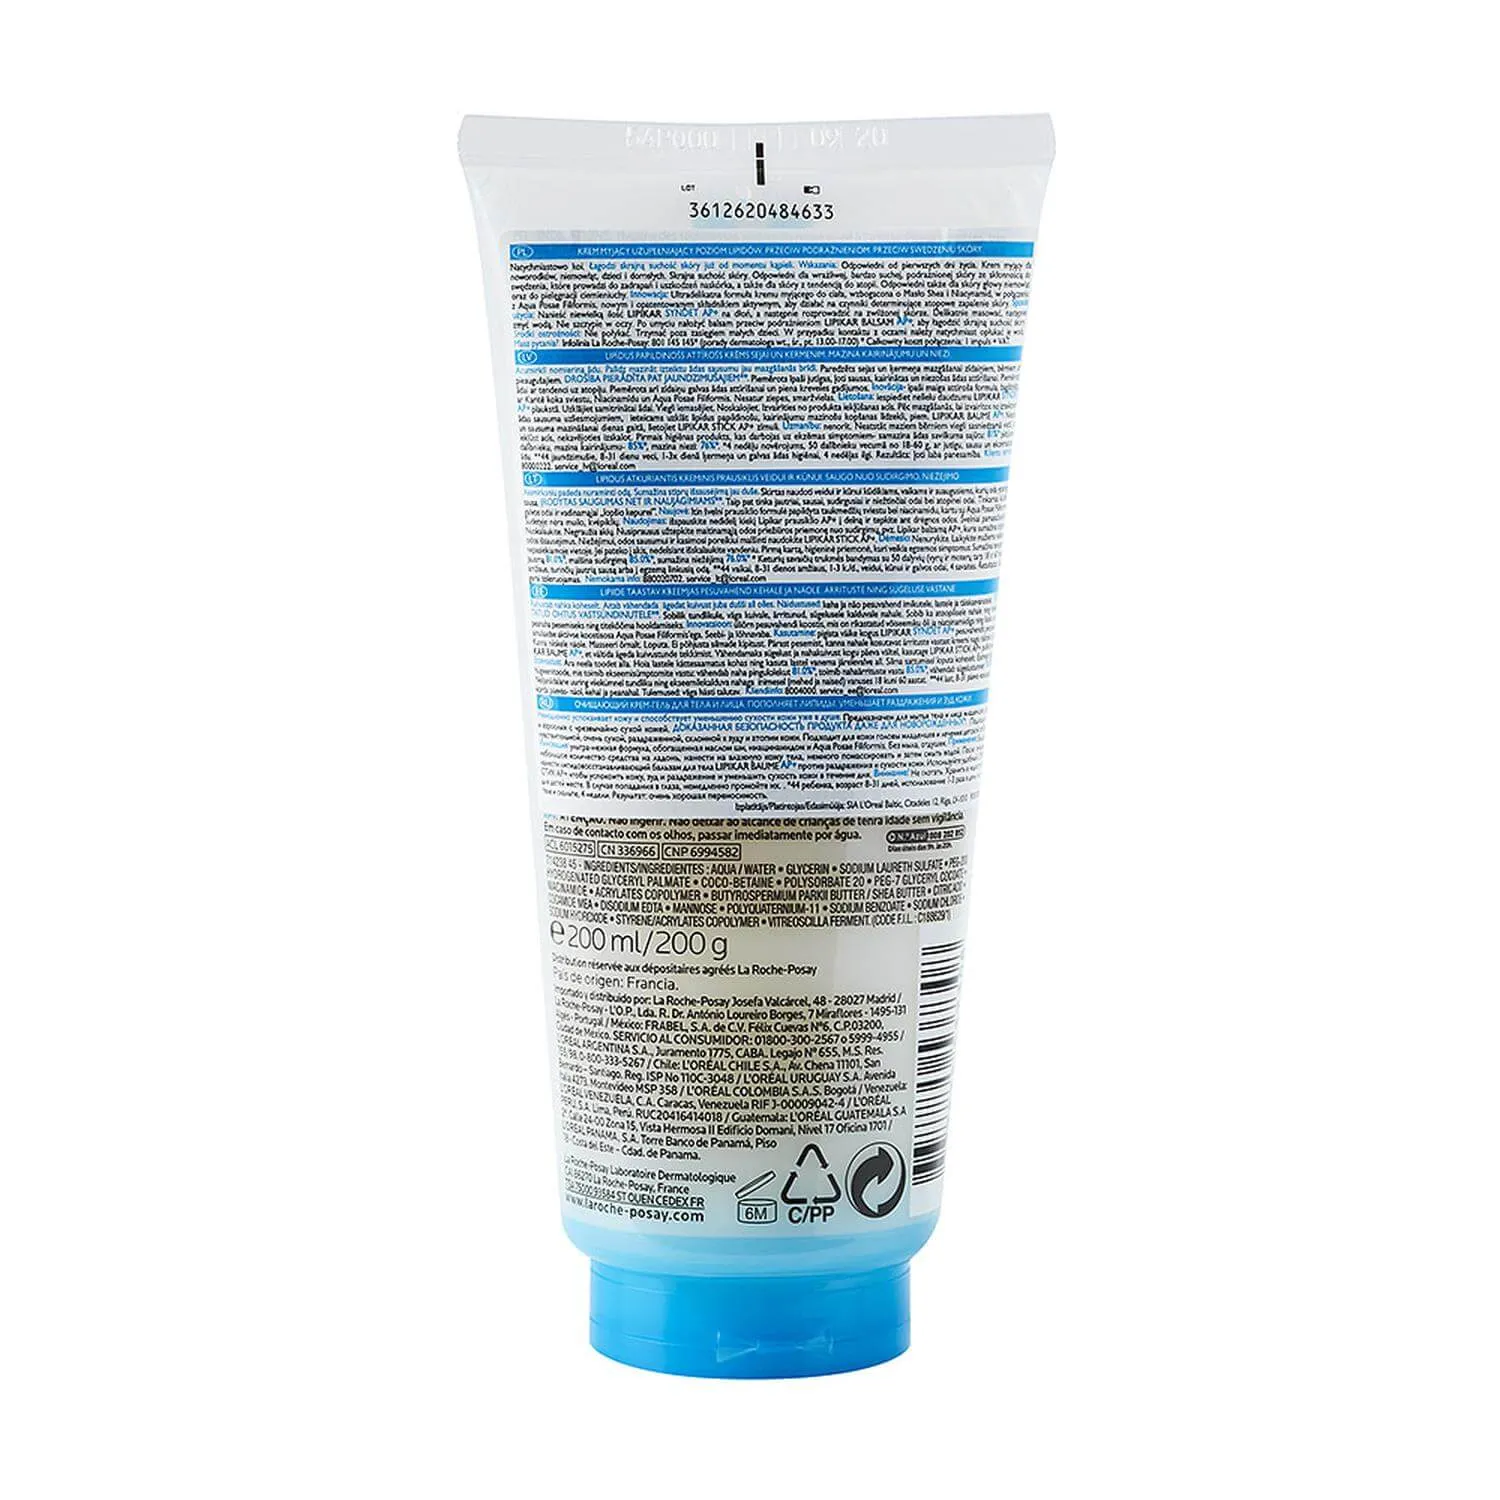 La Roche-Posay Lipikar Syndet AP+, krem myjący uzupełniający poziom lipidów, 200 ml 